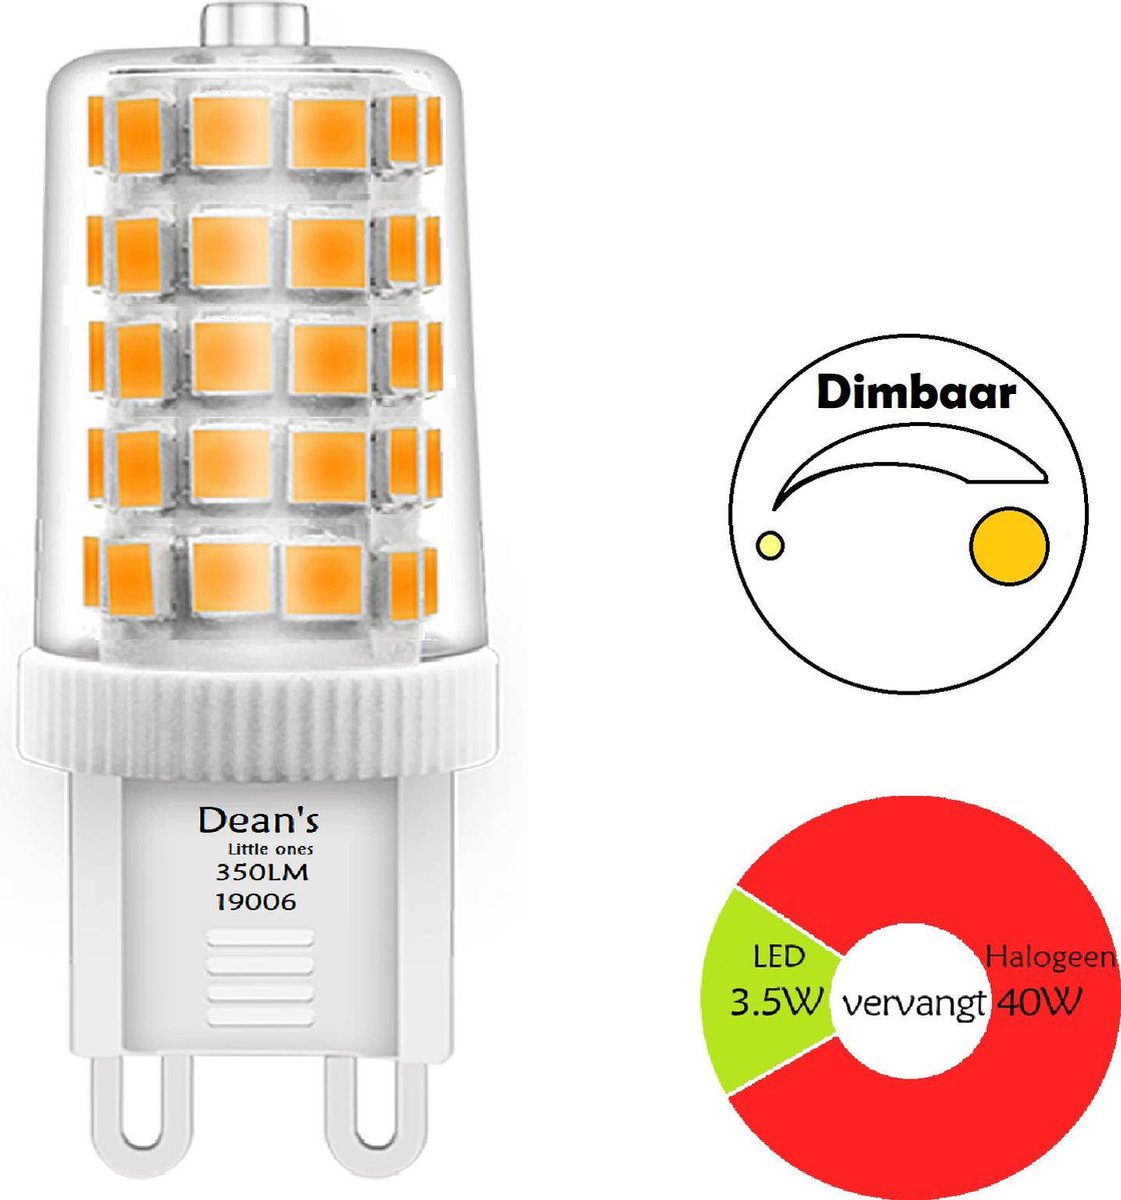 LED G9 Dimbaar | 2700K Warm wit vervangt halogeen | Flikker vrij | 3.5W |... | bol.com